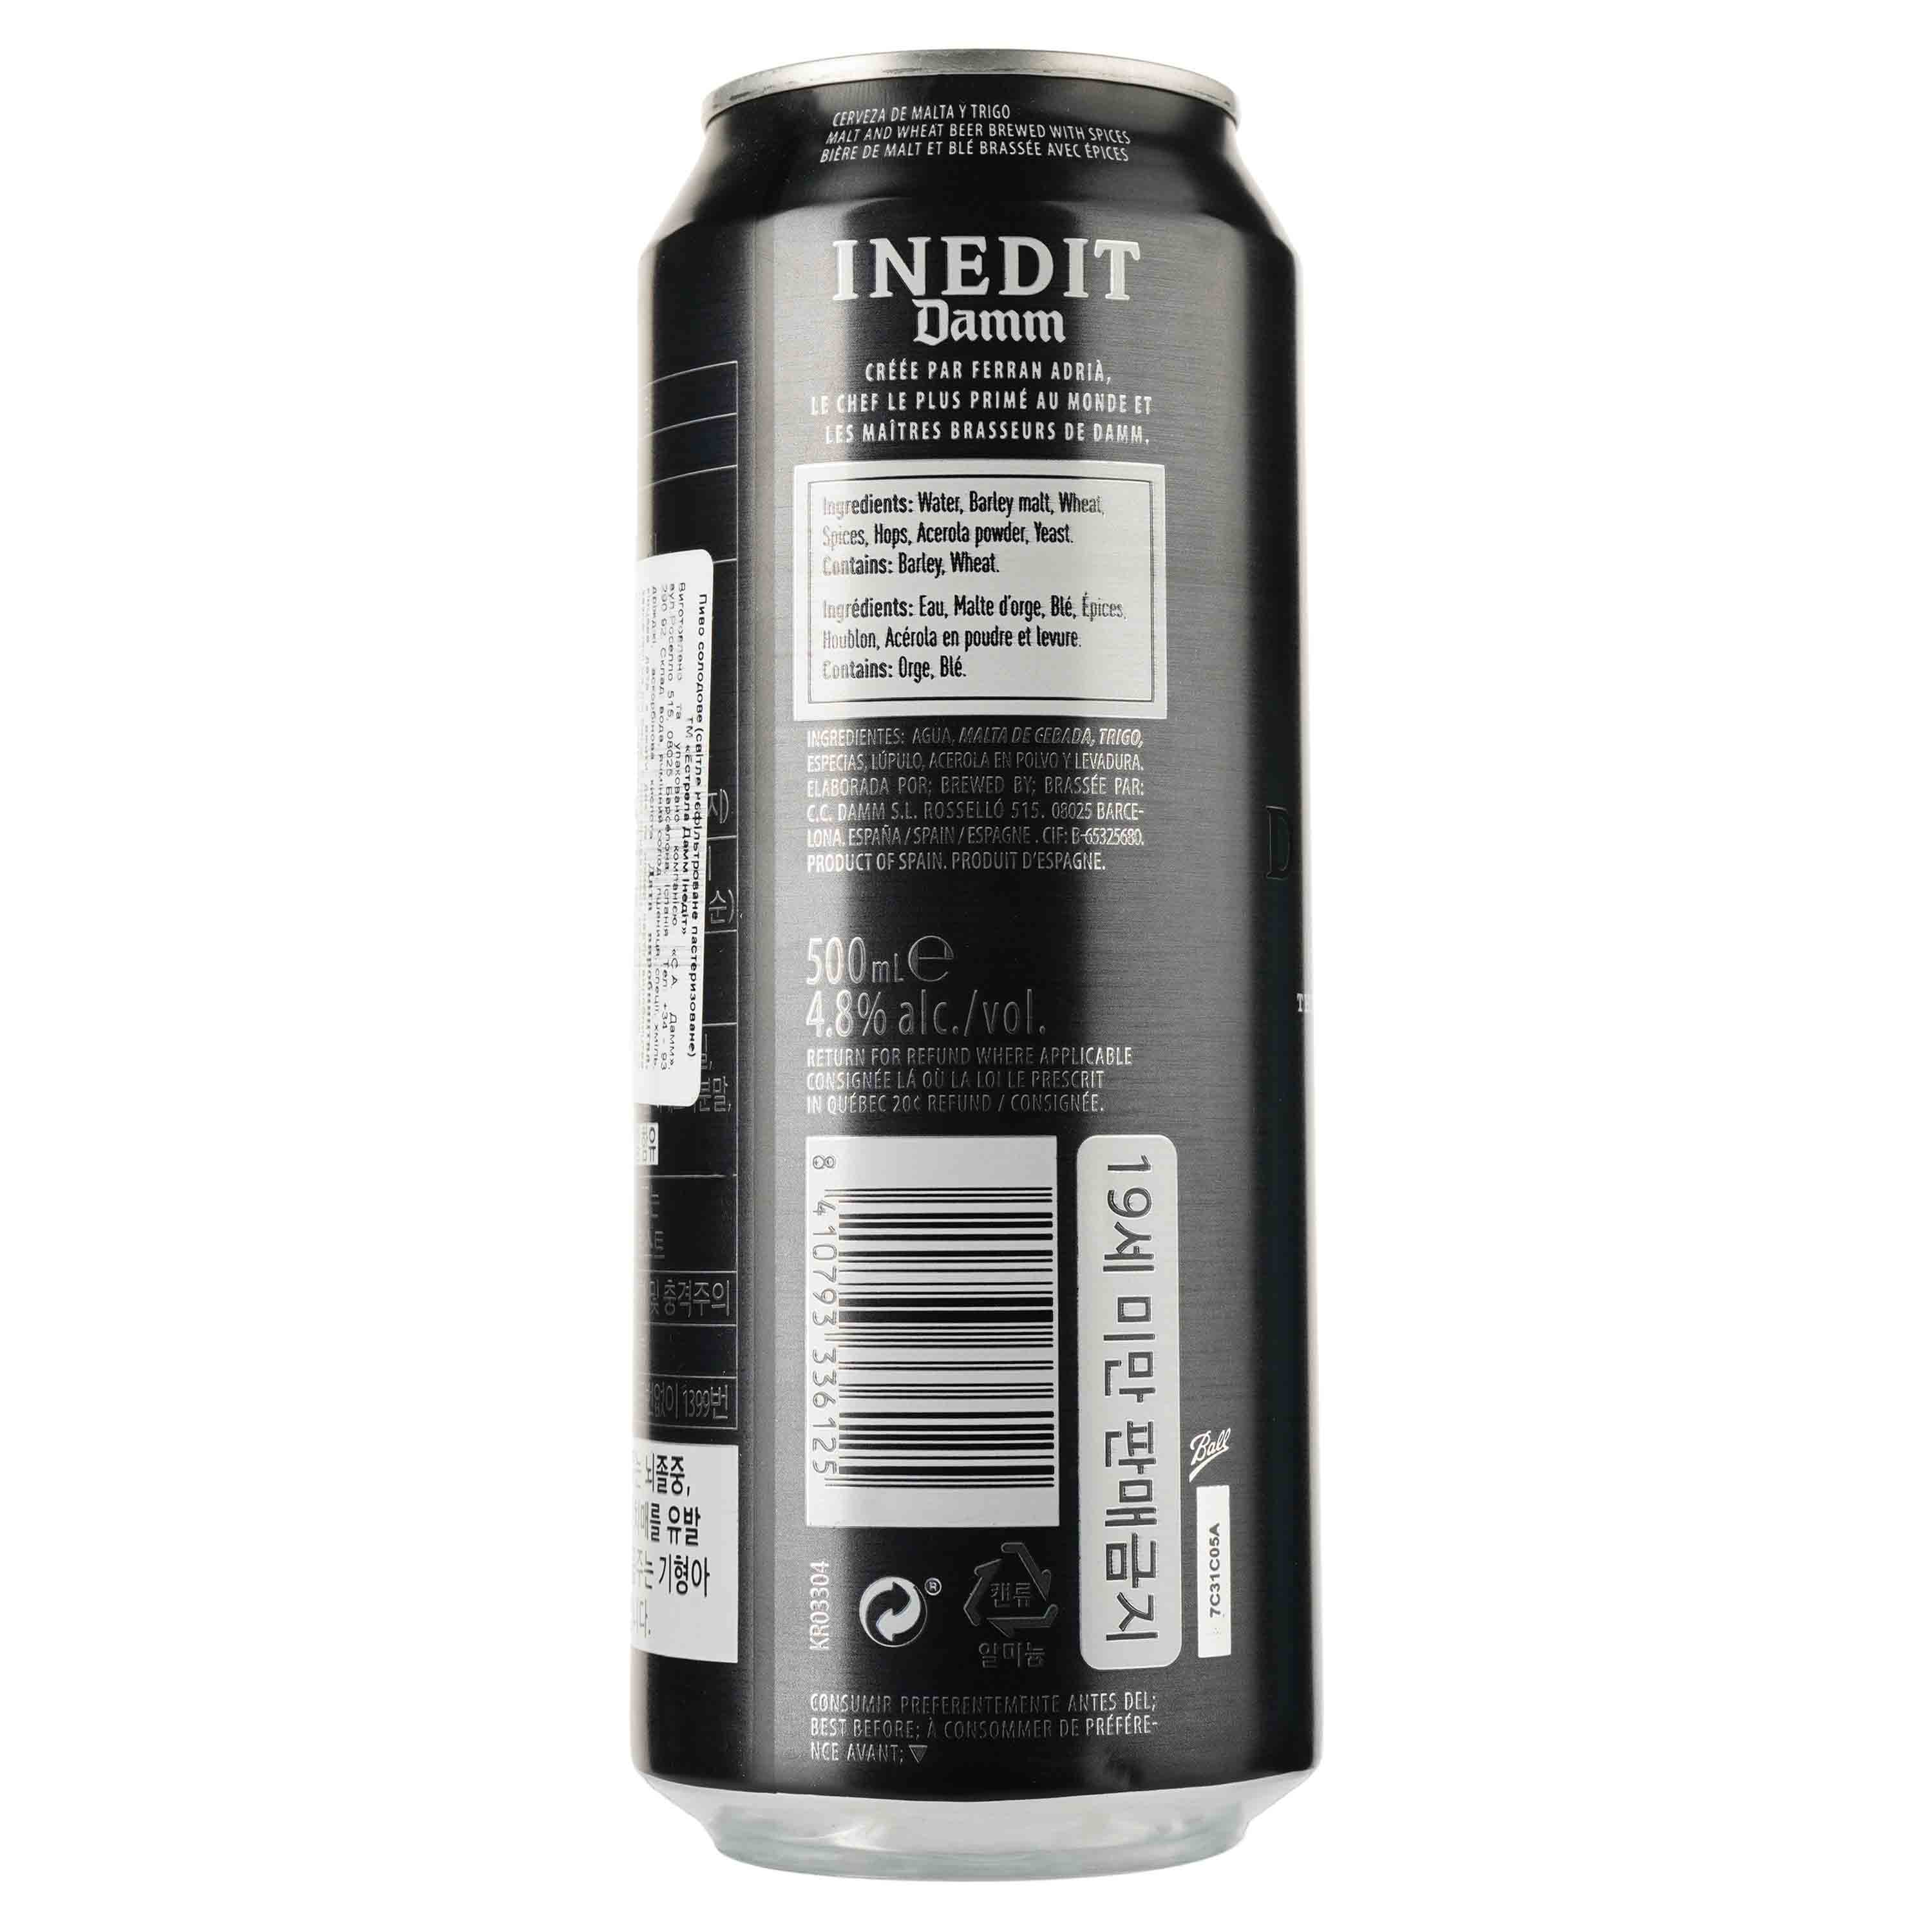 Пиво Estrella Damm Inedit, cветлое, 4,8 %, ж/б, 0,5 л (799958) - фото 2